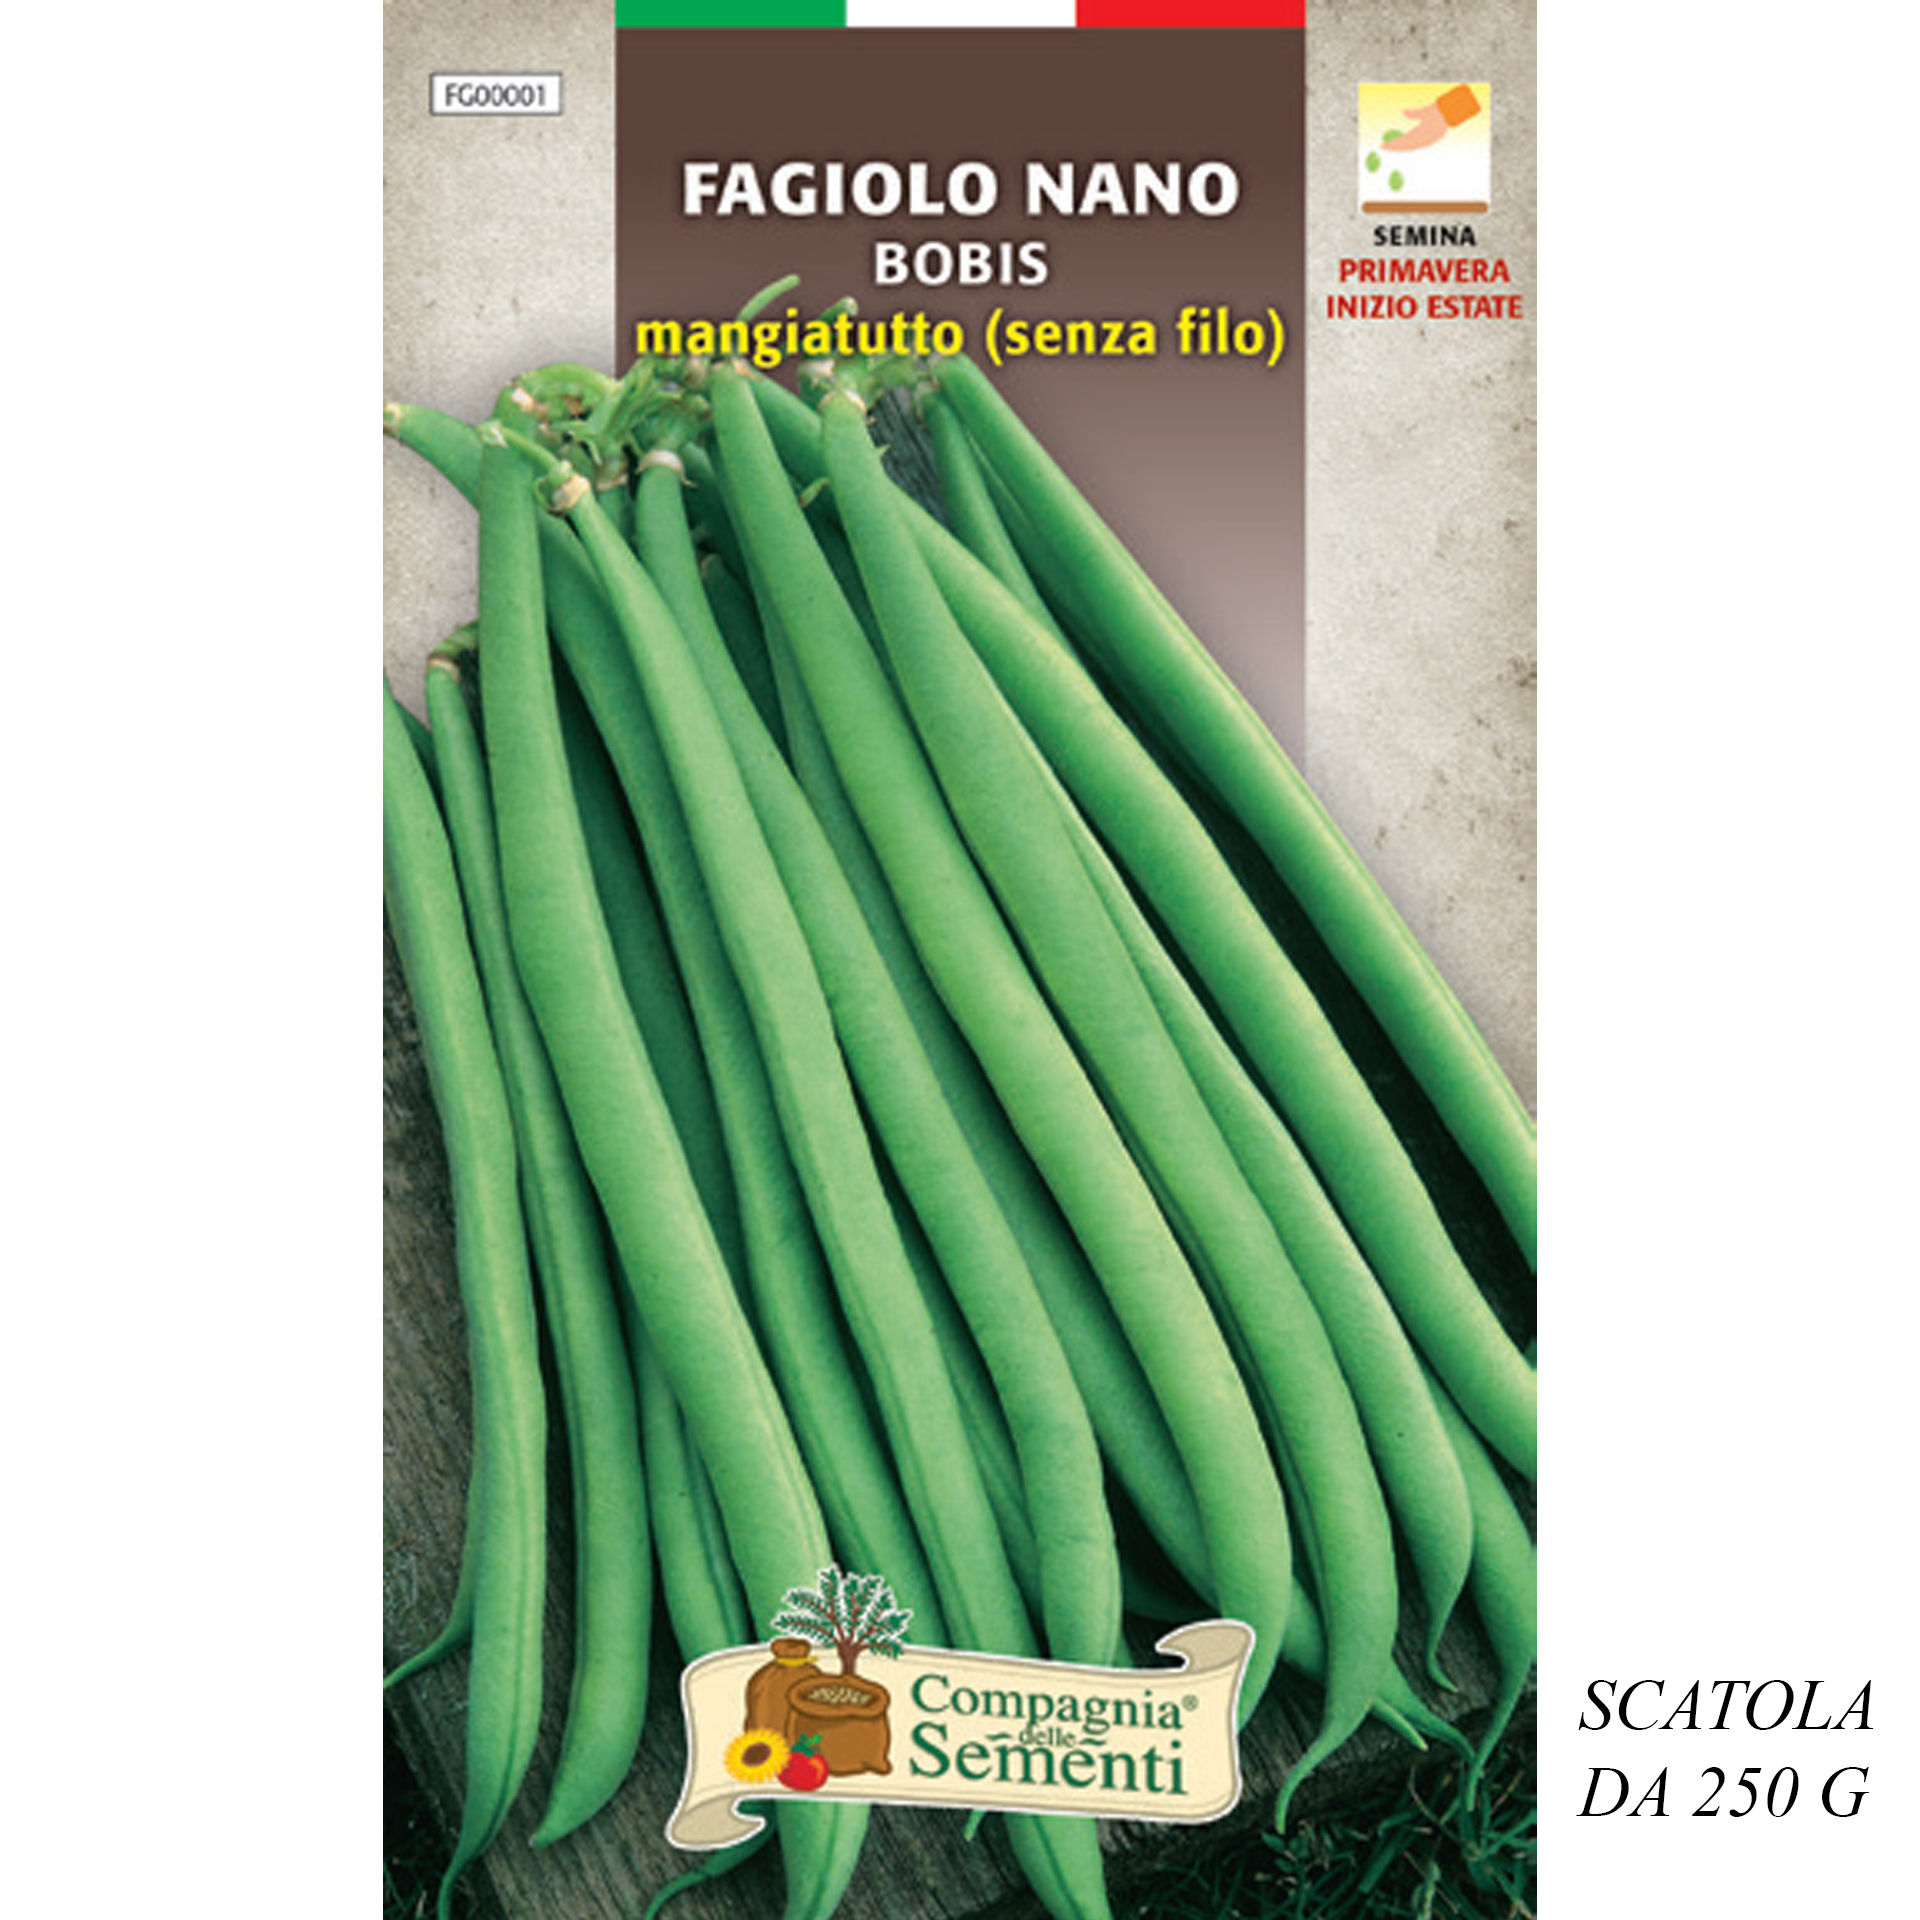 FAGIOLO NANO BOBIS MANGIATUTTO (SENZA FILO)Organica